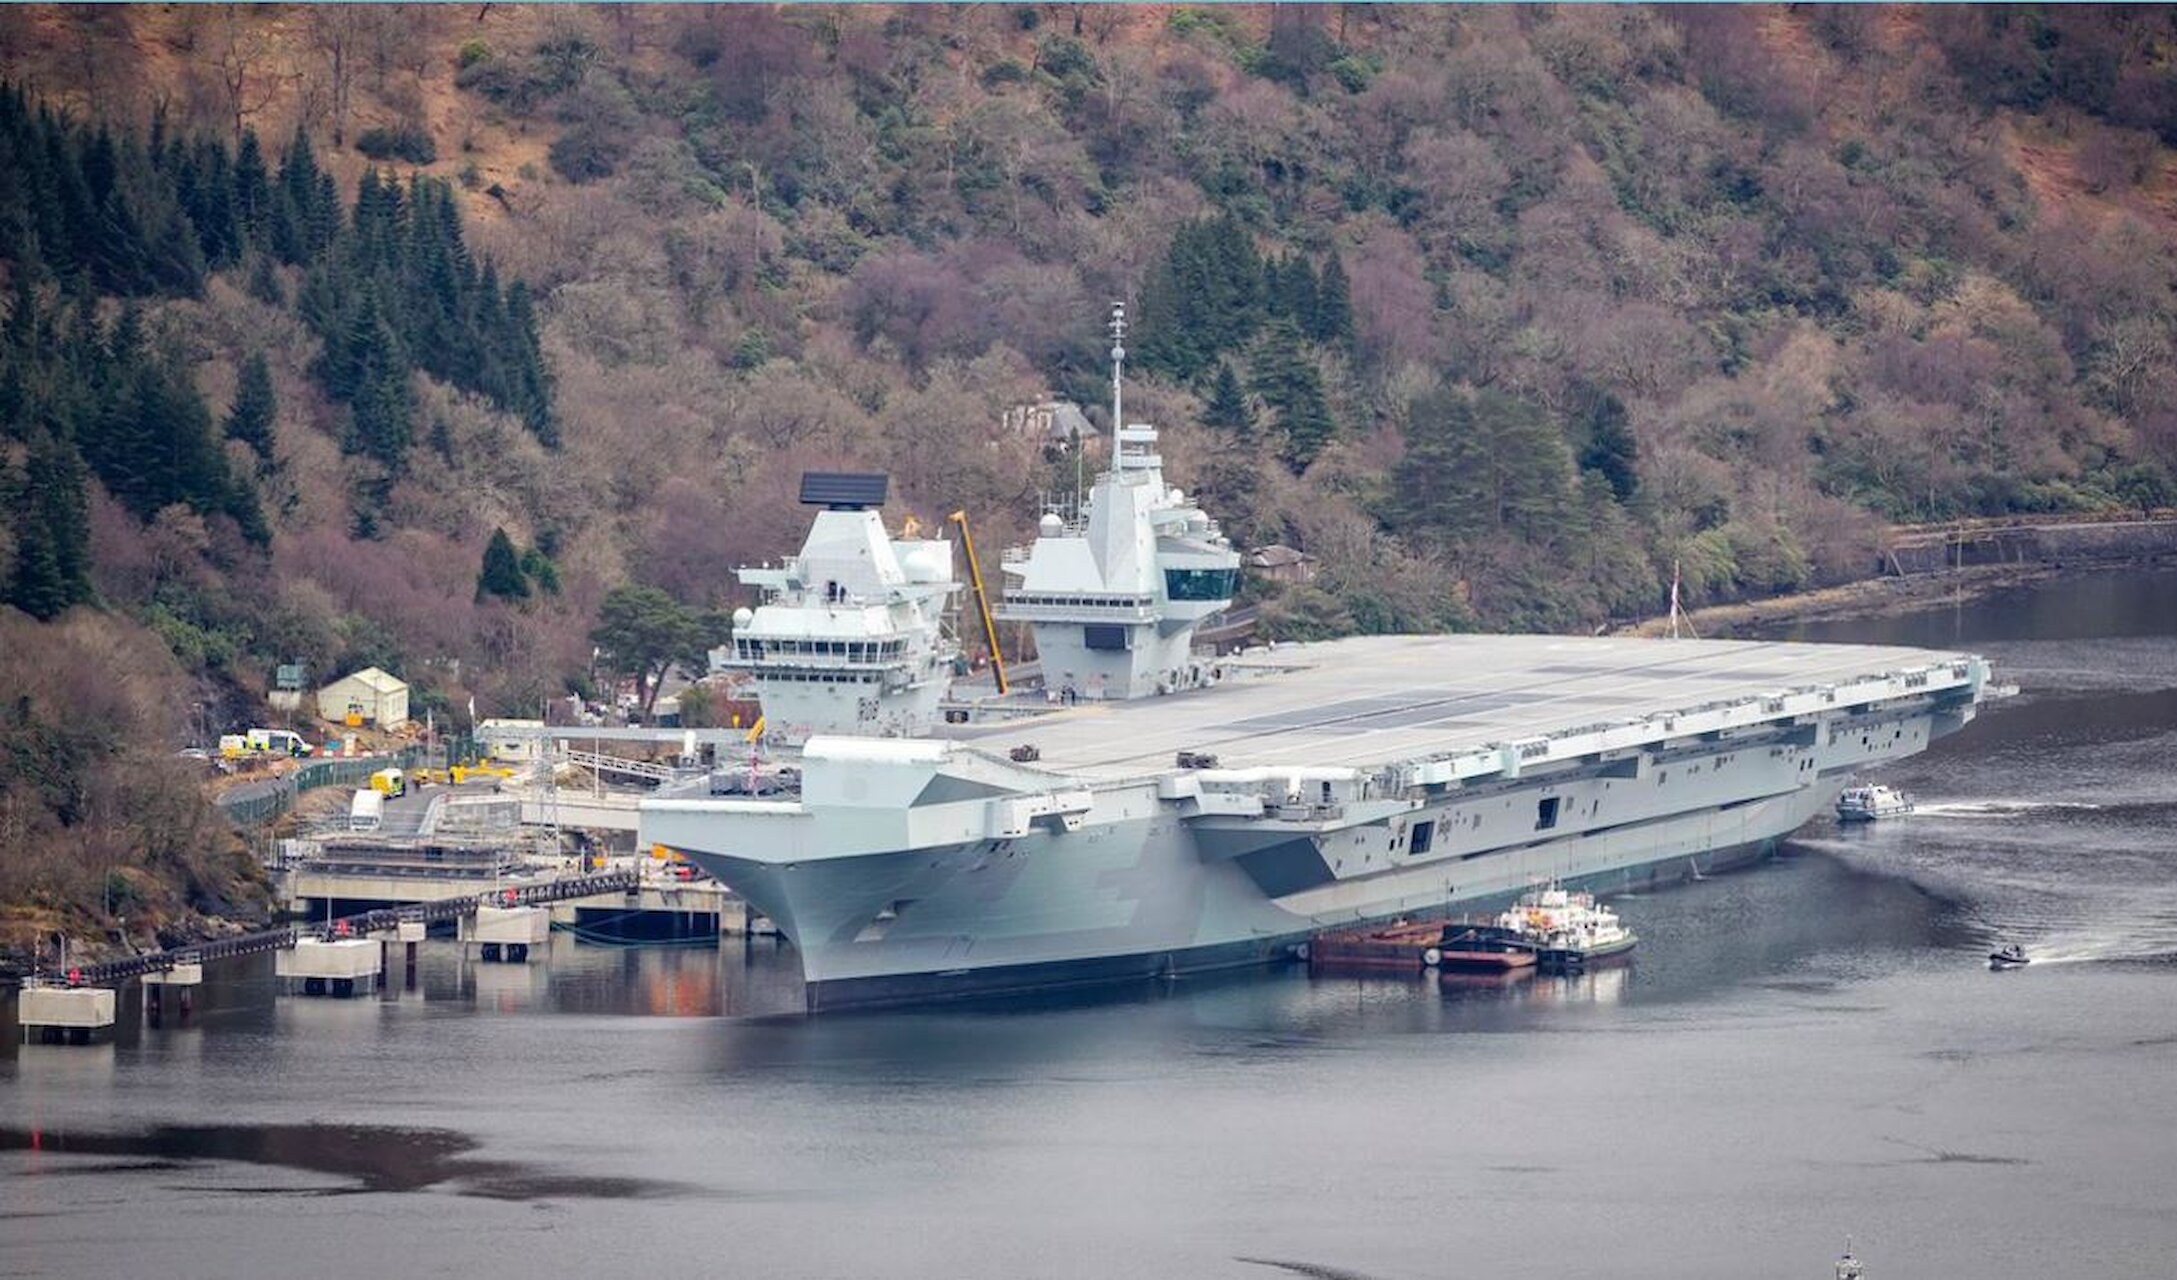 Image of HMS Queen Elizabeth